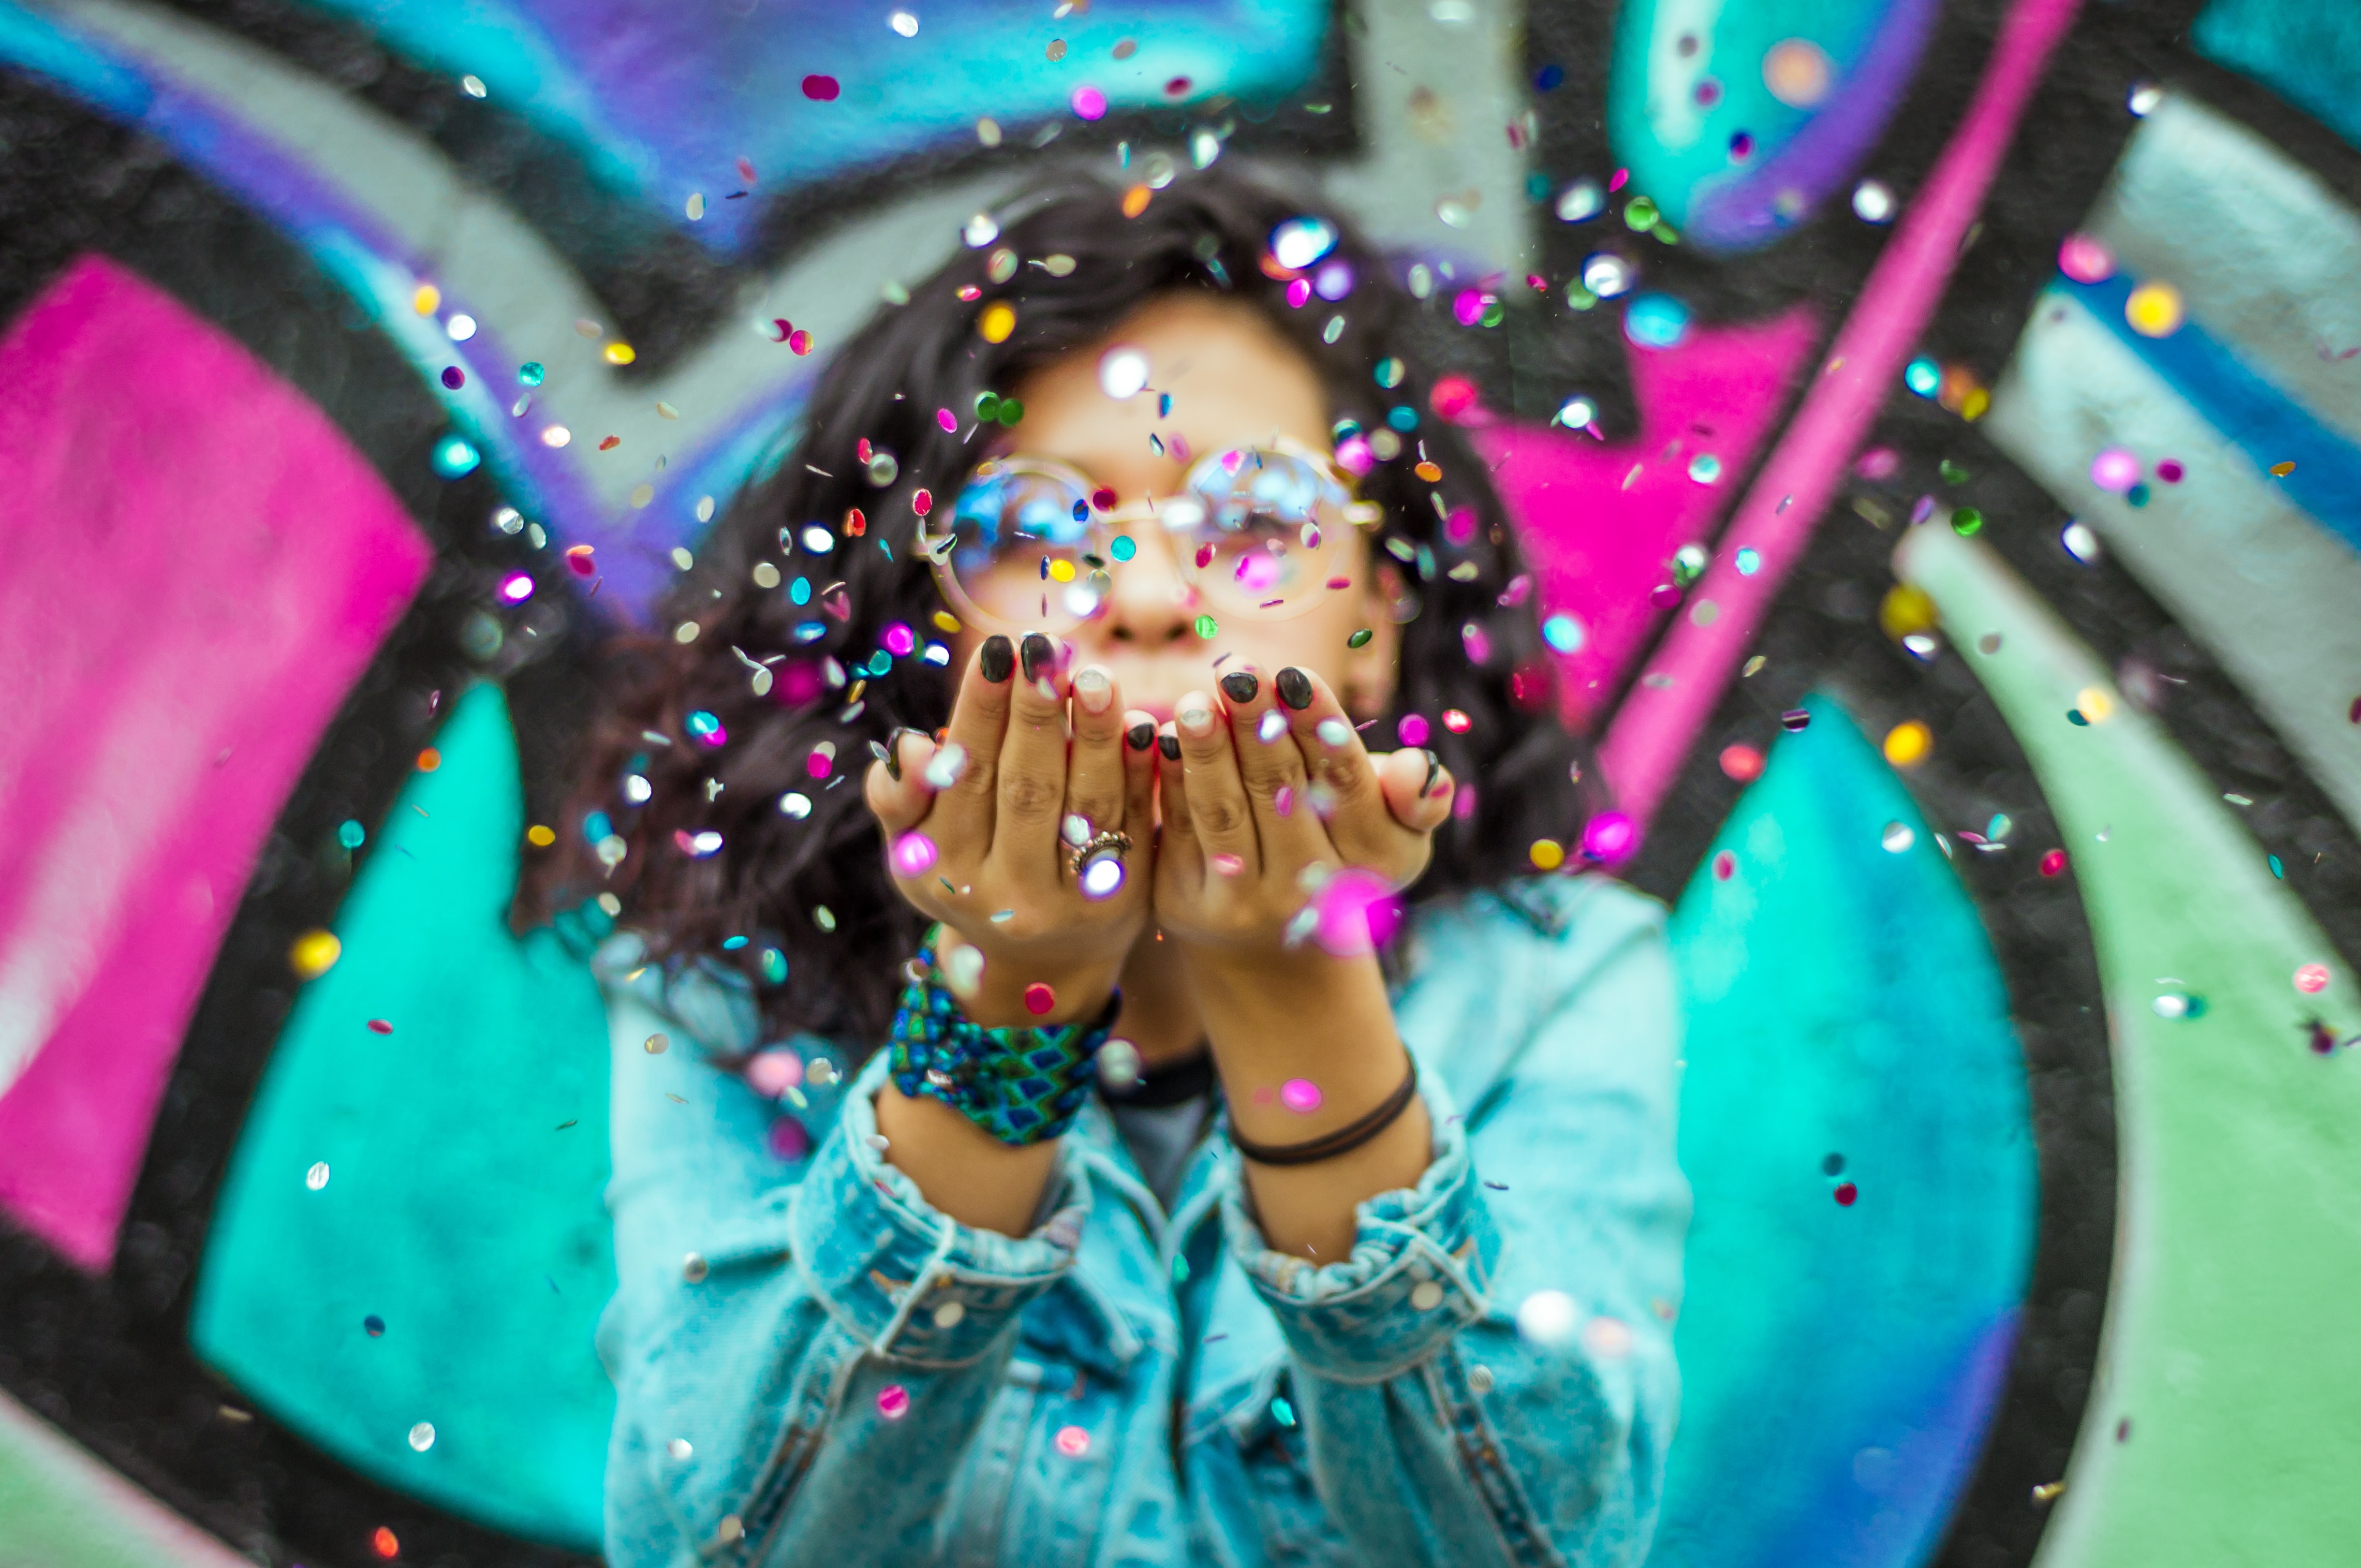 Persoon staat voor een graffitimuur en blaast confetti uit haar handen